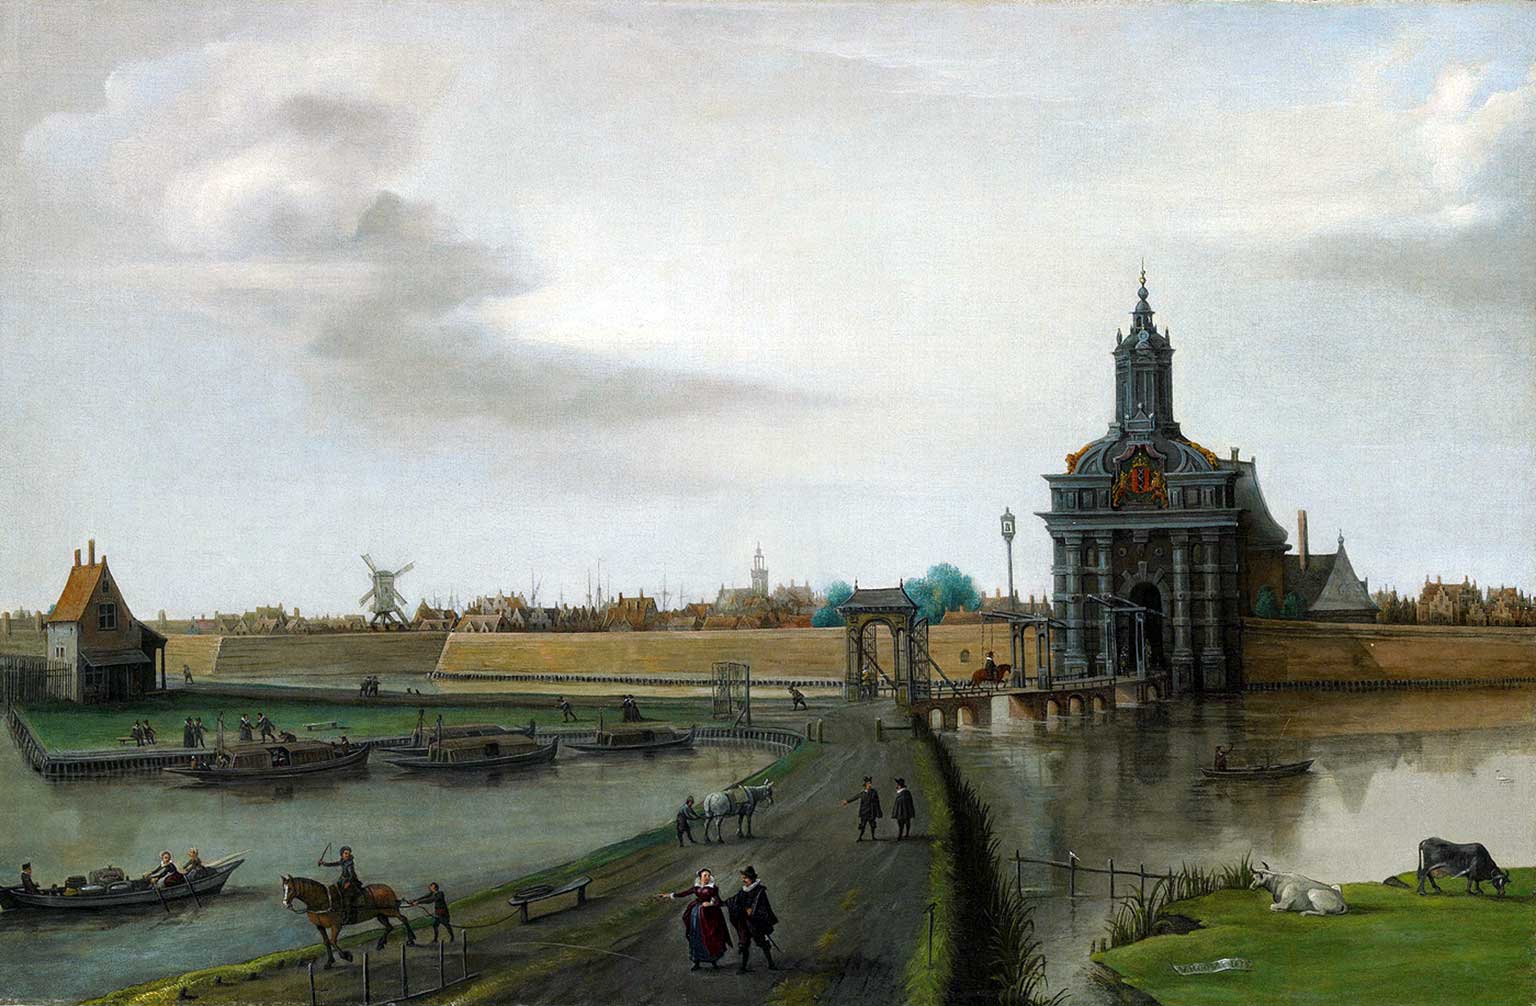 Vierde Haarlemmerpoort, Amsterdam, olieverschilderij uit 1618